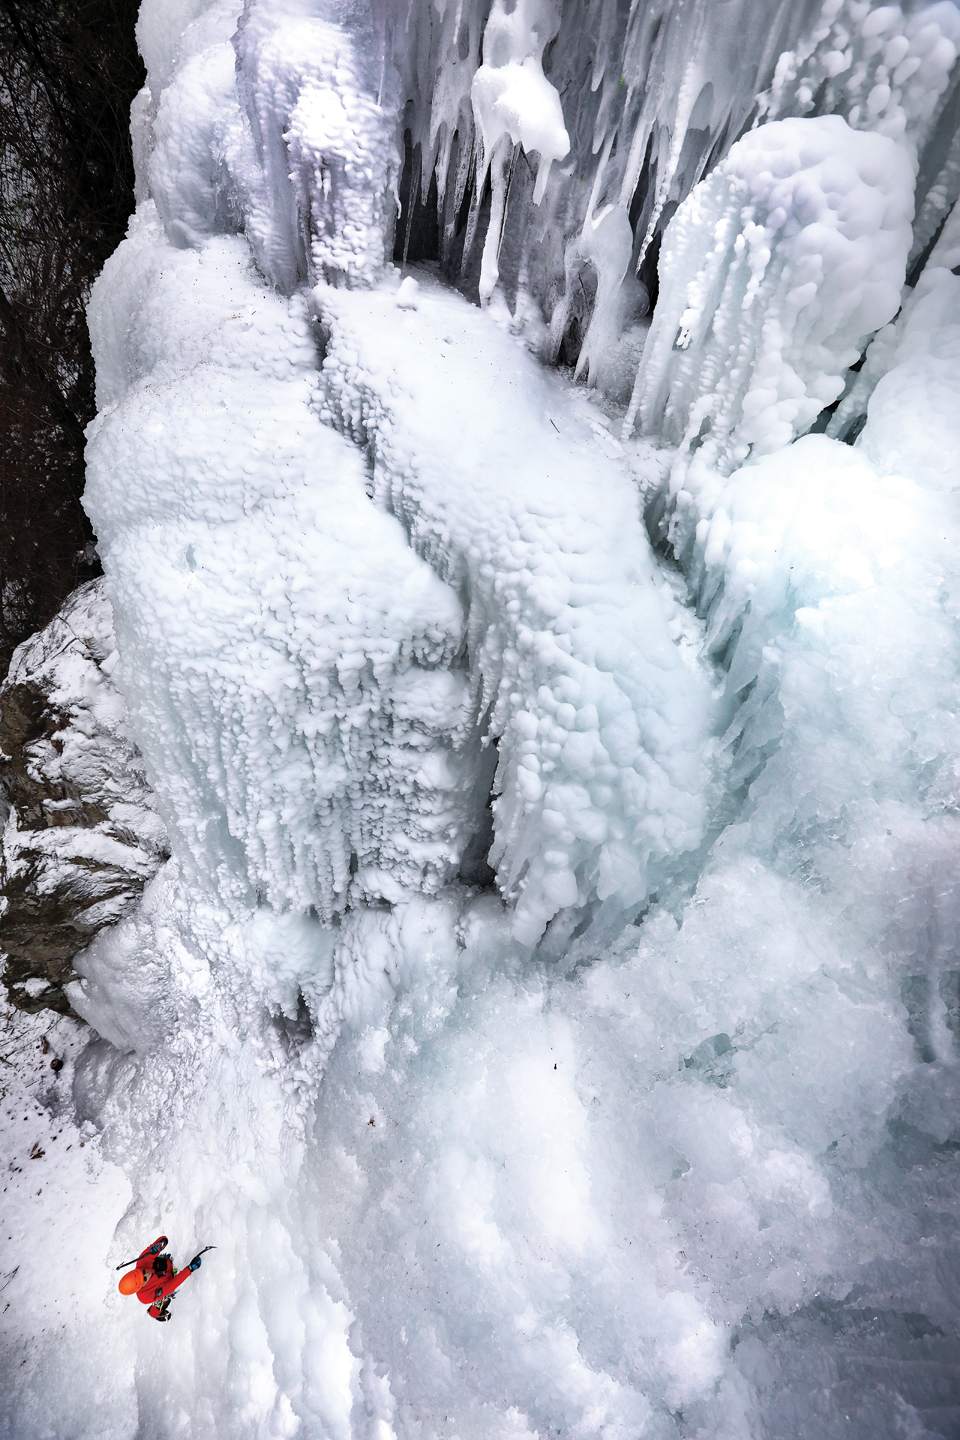 좌측벽을 등반 중인 등반가. 만들어진 얼음은 어떠한 조각품에도 뒤지지 않을 만큼 멋진 광경을 연출한다.